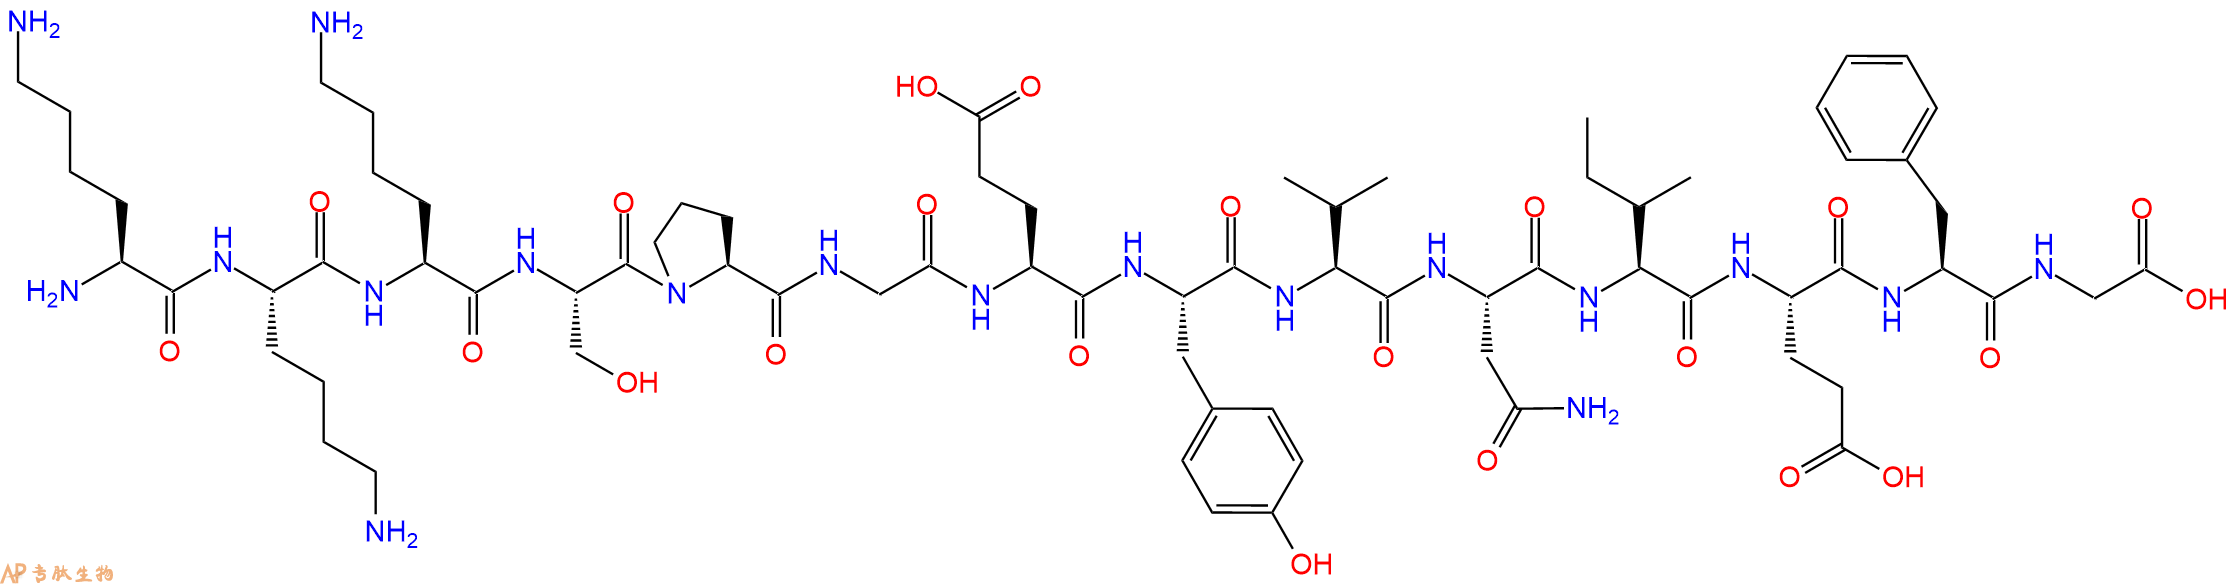 专肽生物产品Lys-Lys-IRS-1 (891-902) (dephosphorylated) (human)172615-51-9